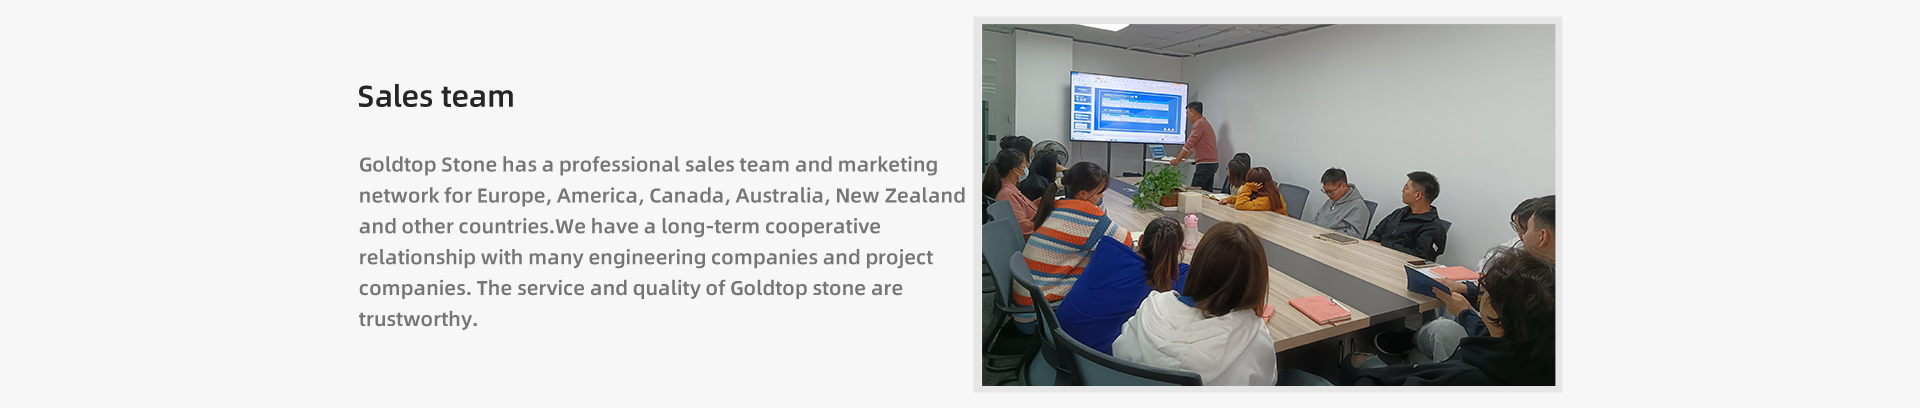 Goldtop Stone لديها فريق مبيعات محترف وشبكة تسويق لأوروبا وأمريكا وكندا وأستراليا ونيوزيلندا ودول أخرى. لدينا علاقة تعاون طويلة الأمد مع العديد من الشركات الهندسية وشركات المشاريع. خدمة وجودة حجر Goldtop جديرة بالثقة.